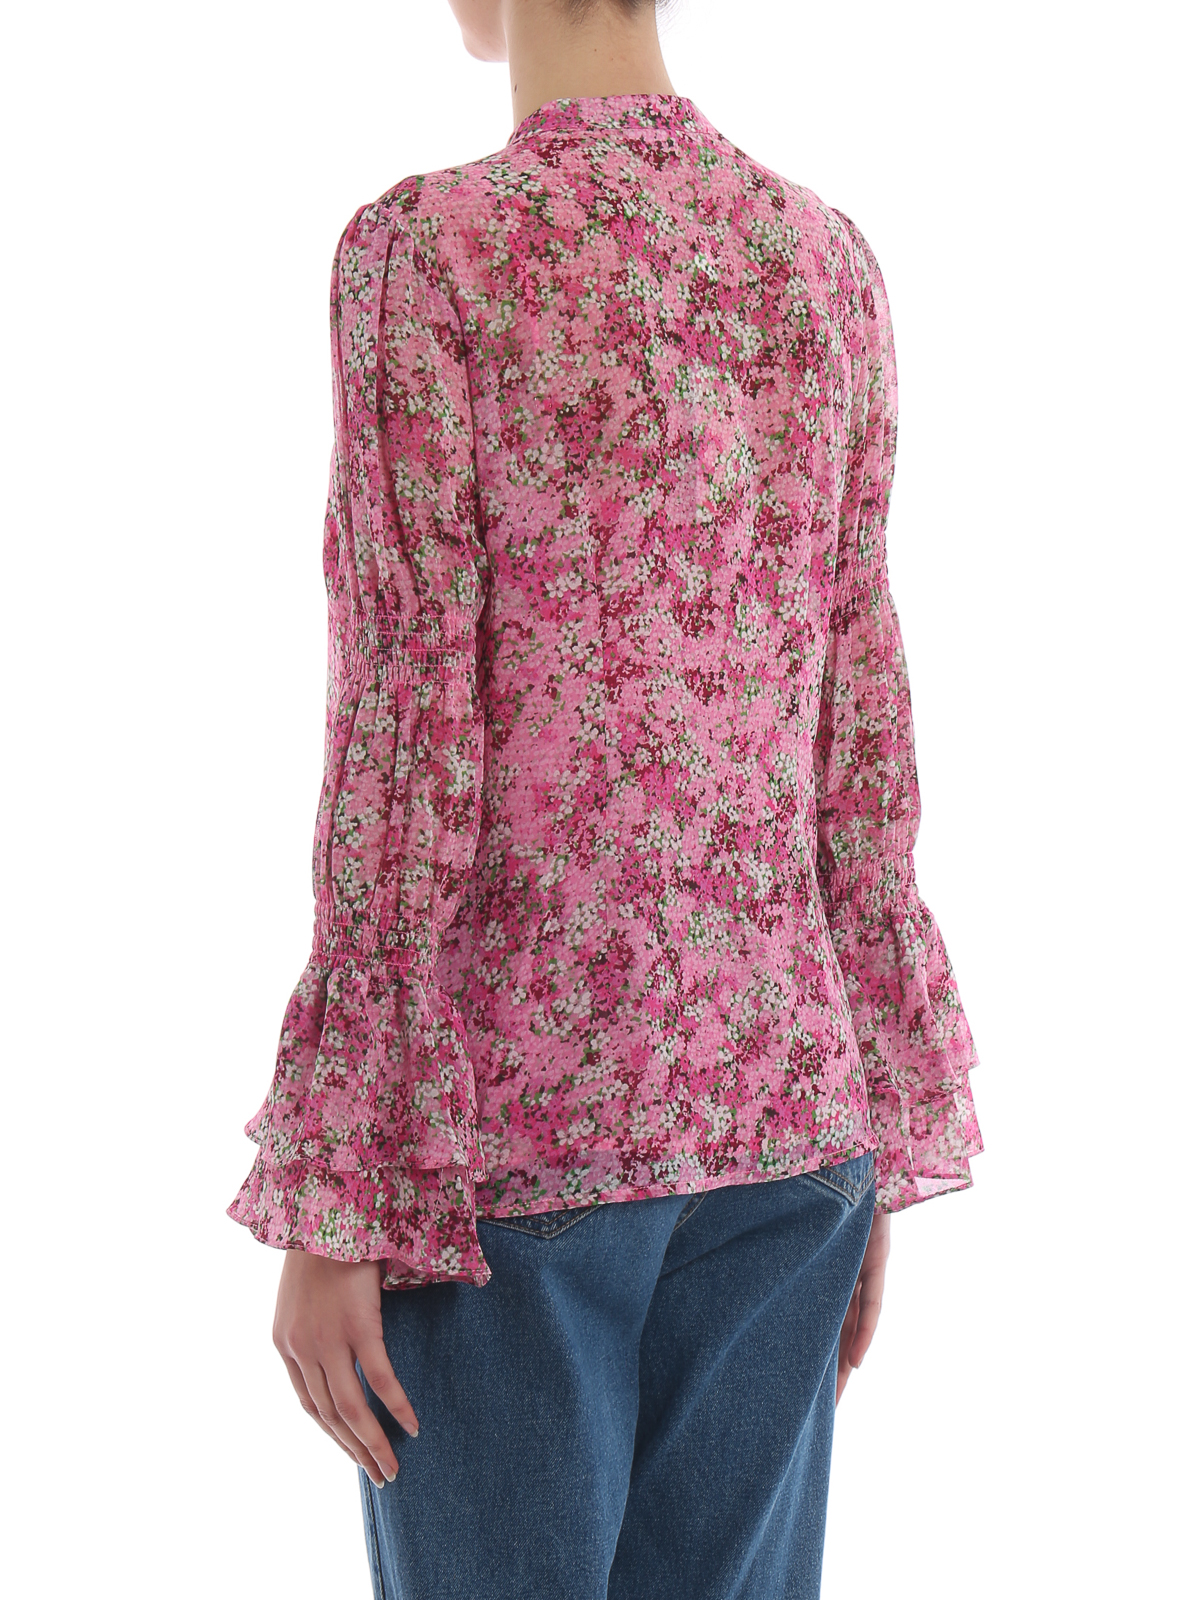 michael kors floral blouse